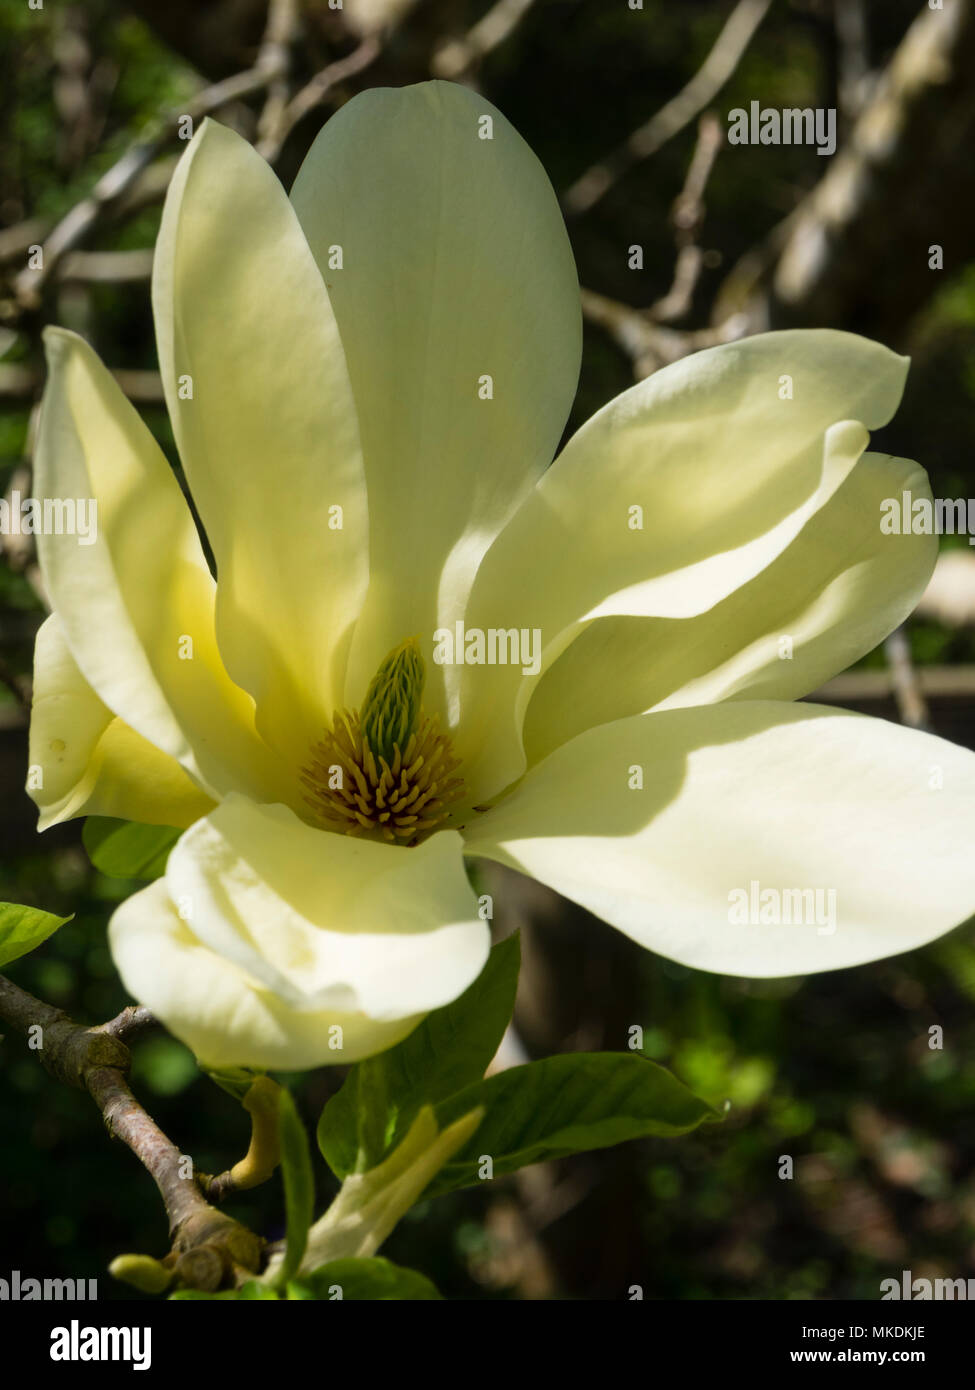 Spring Flower amarillo pálido del árbol de hoja caduca, Magnolia 'Fei Huang' ('Río Amarillo') Foto de stock